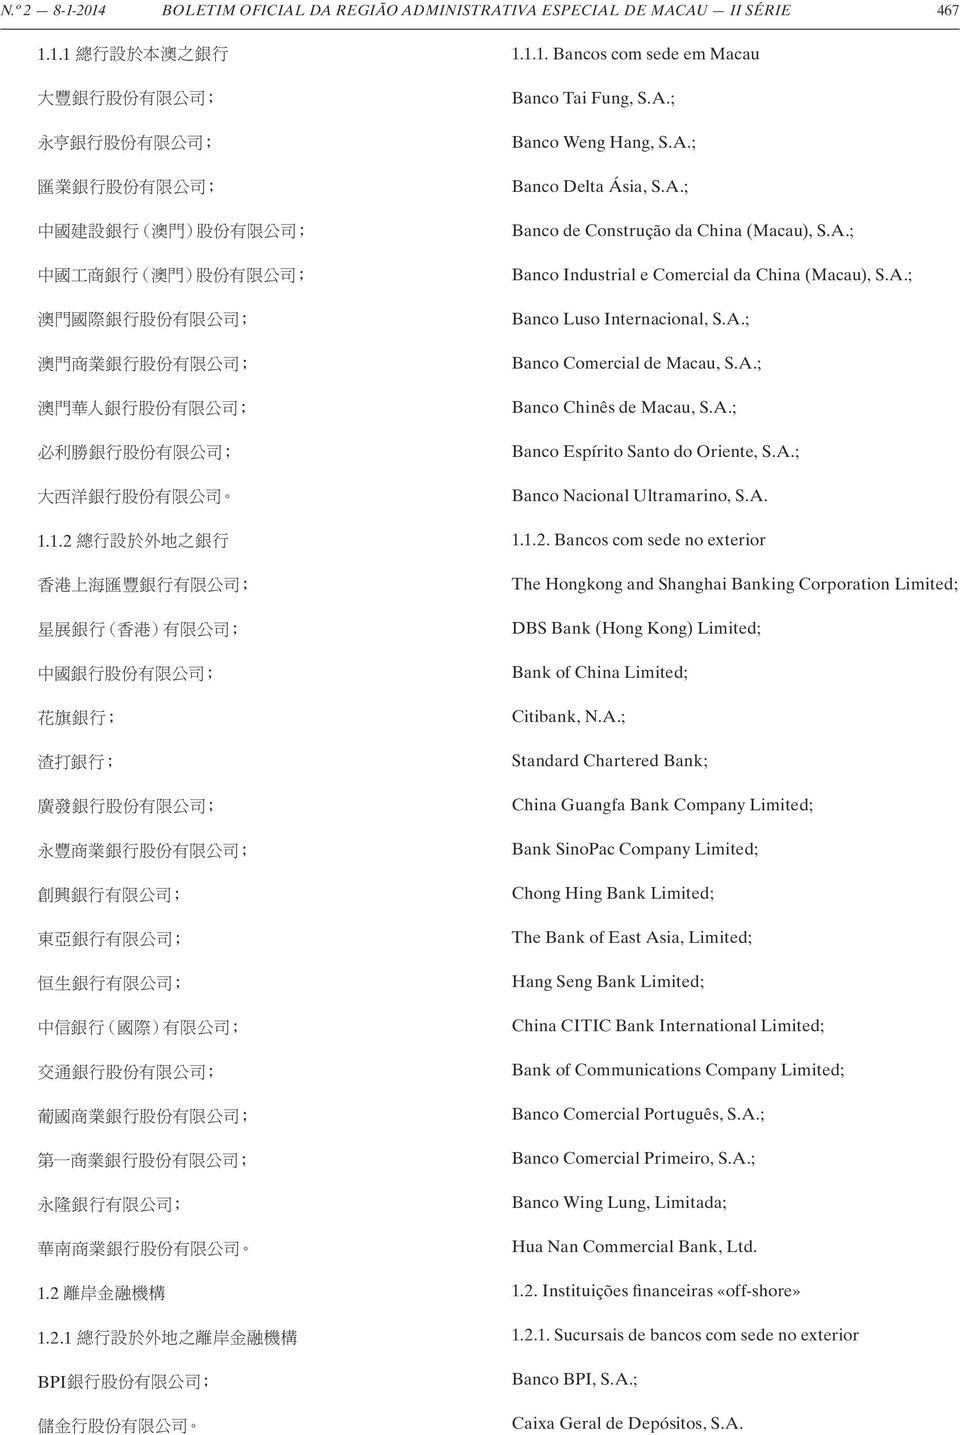 A.; Banco Nacional Ultramarino, S.A. 1.1.2. Bancos com sede no exterior The Hongkong and Shanghai Banking Corporation Limited; DBS Bank (Hong Kong) Limited; Bank of China Limited; Citibank, N.A.;